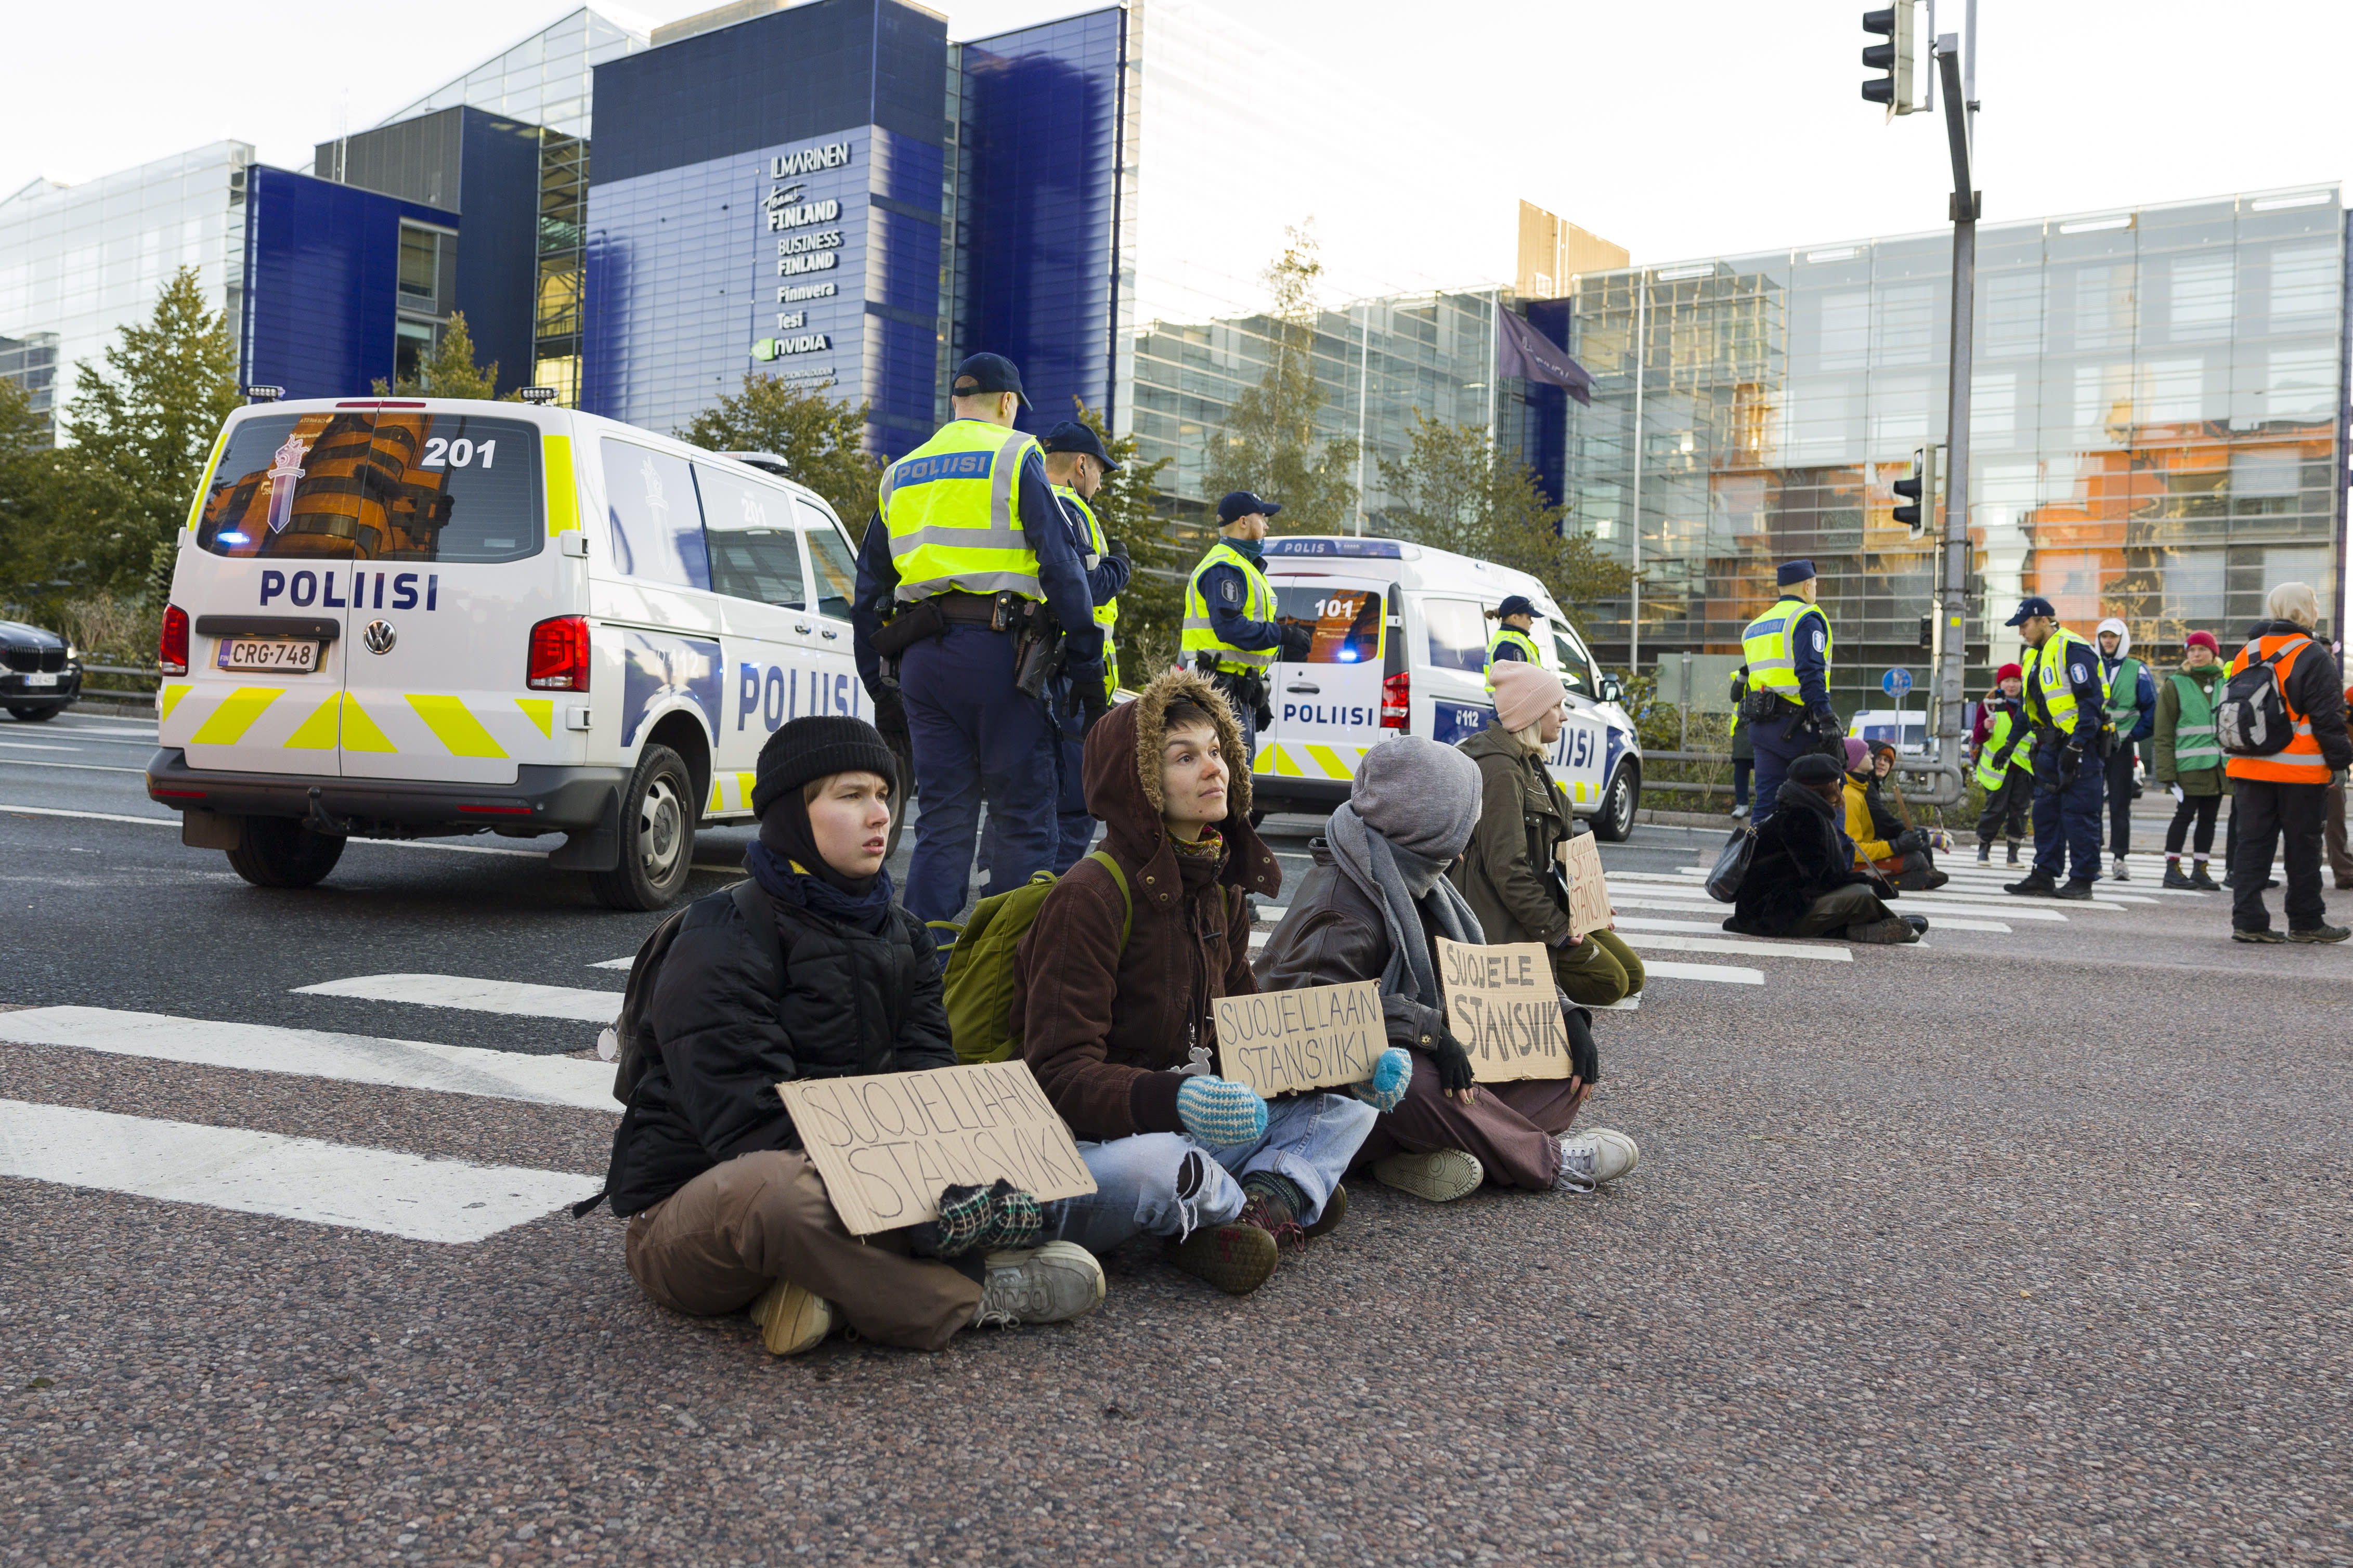 Die Polizei von Helsinki entfernt Umweltdemonstranten, die die Autobahn blockieren